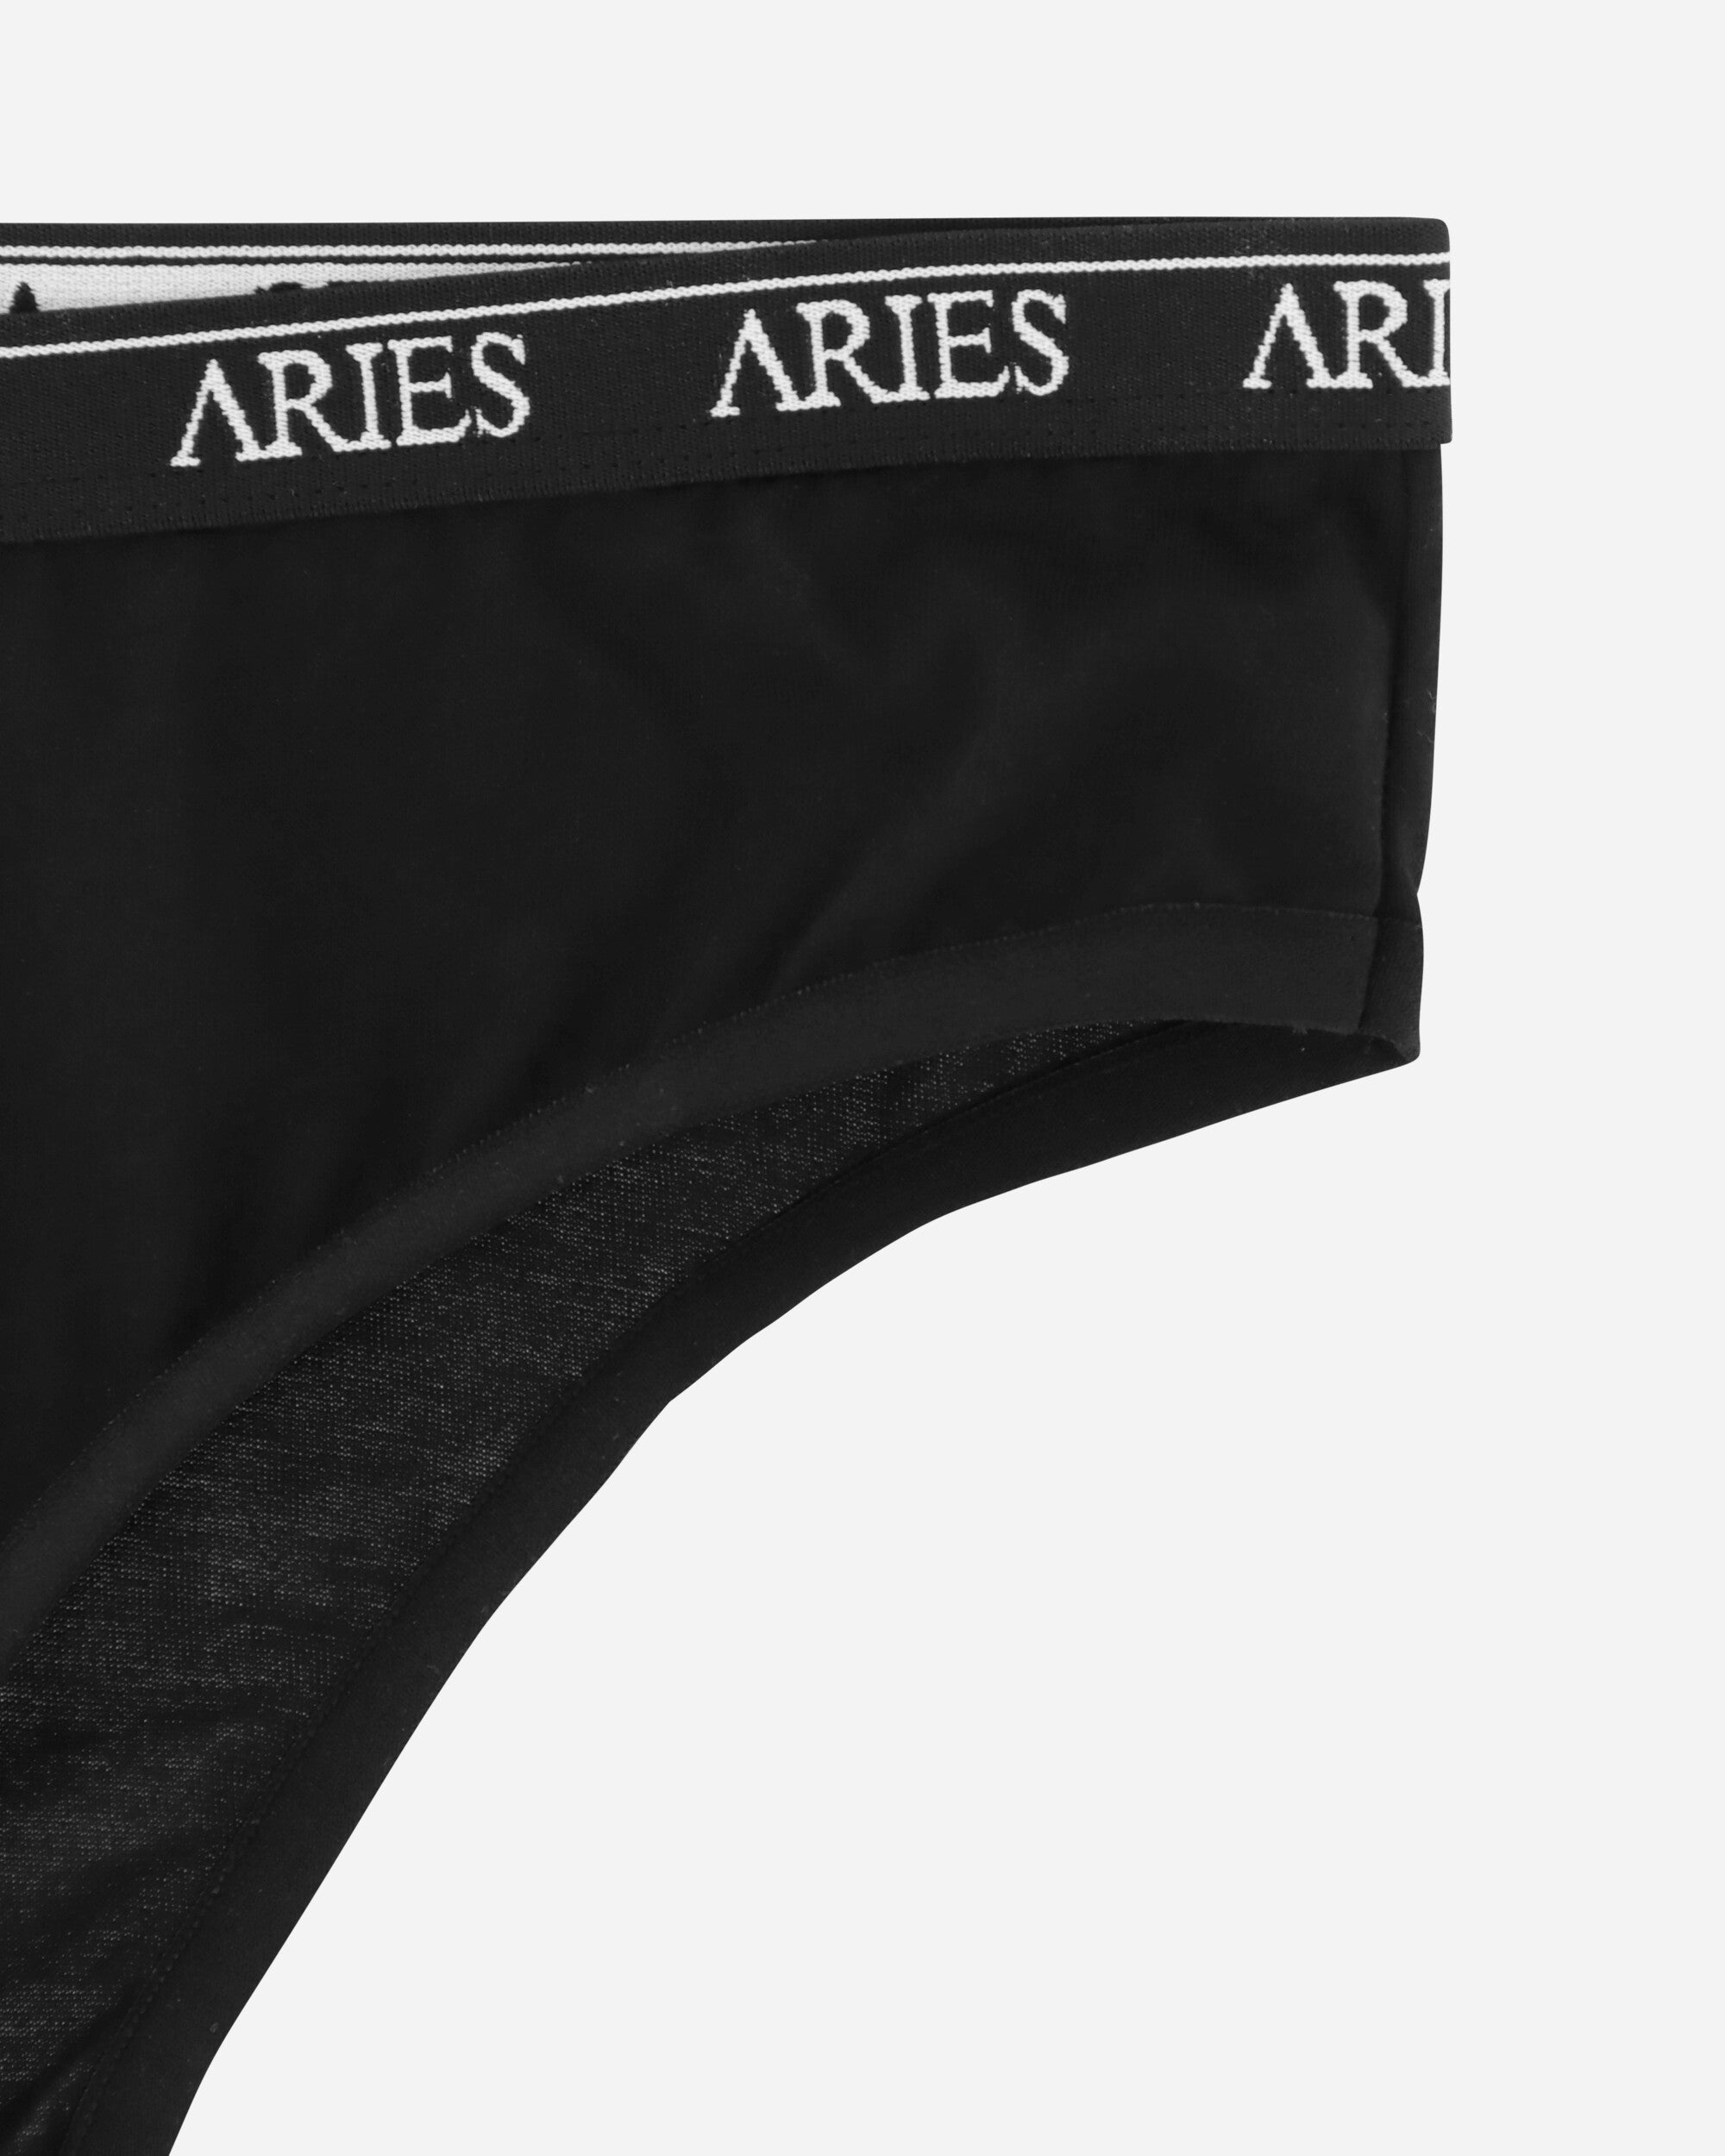 Aries Mercerised Cotton Hipster Briefs Black Underwear Briefs FUAR00124 BLK